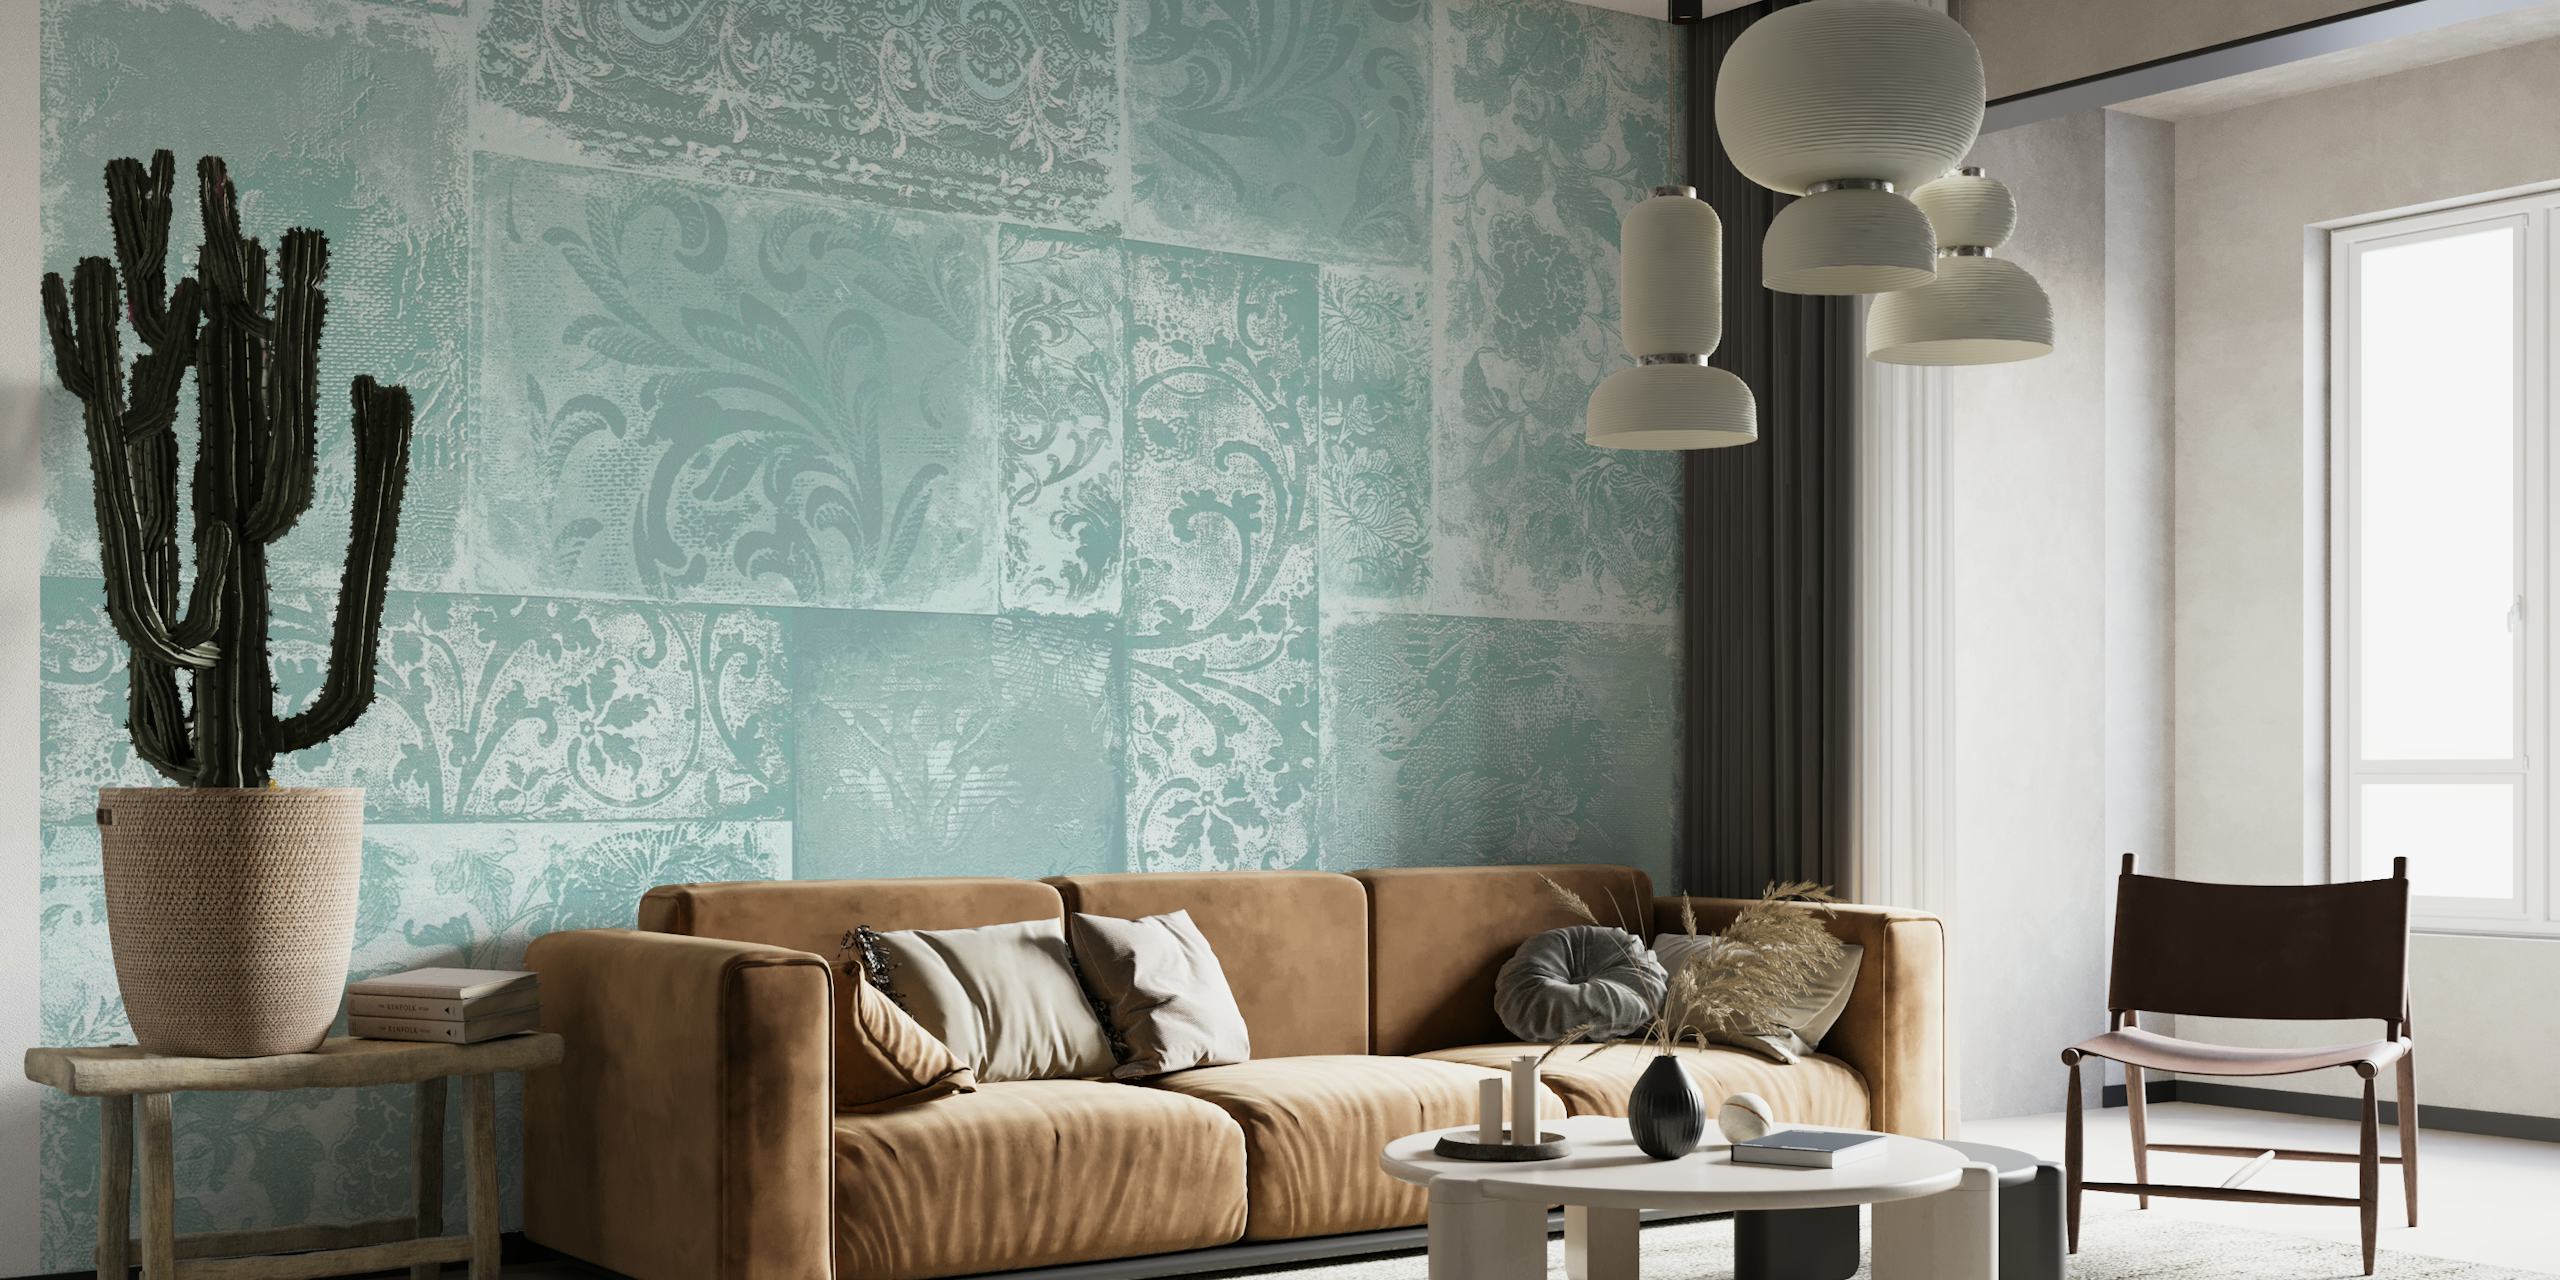 Mural de pared bohemio de patchwork turquesa que presenta una mezcla de patrones ornamentados en tonos suaves.